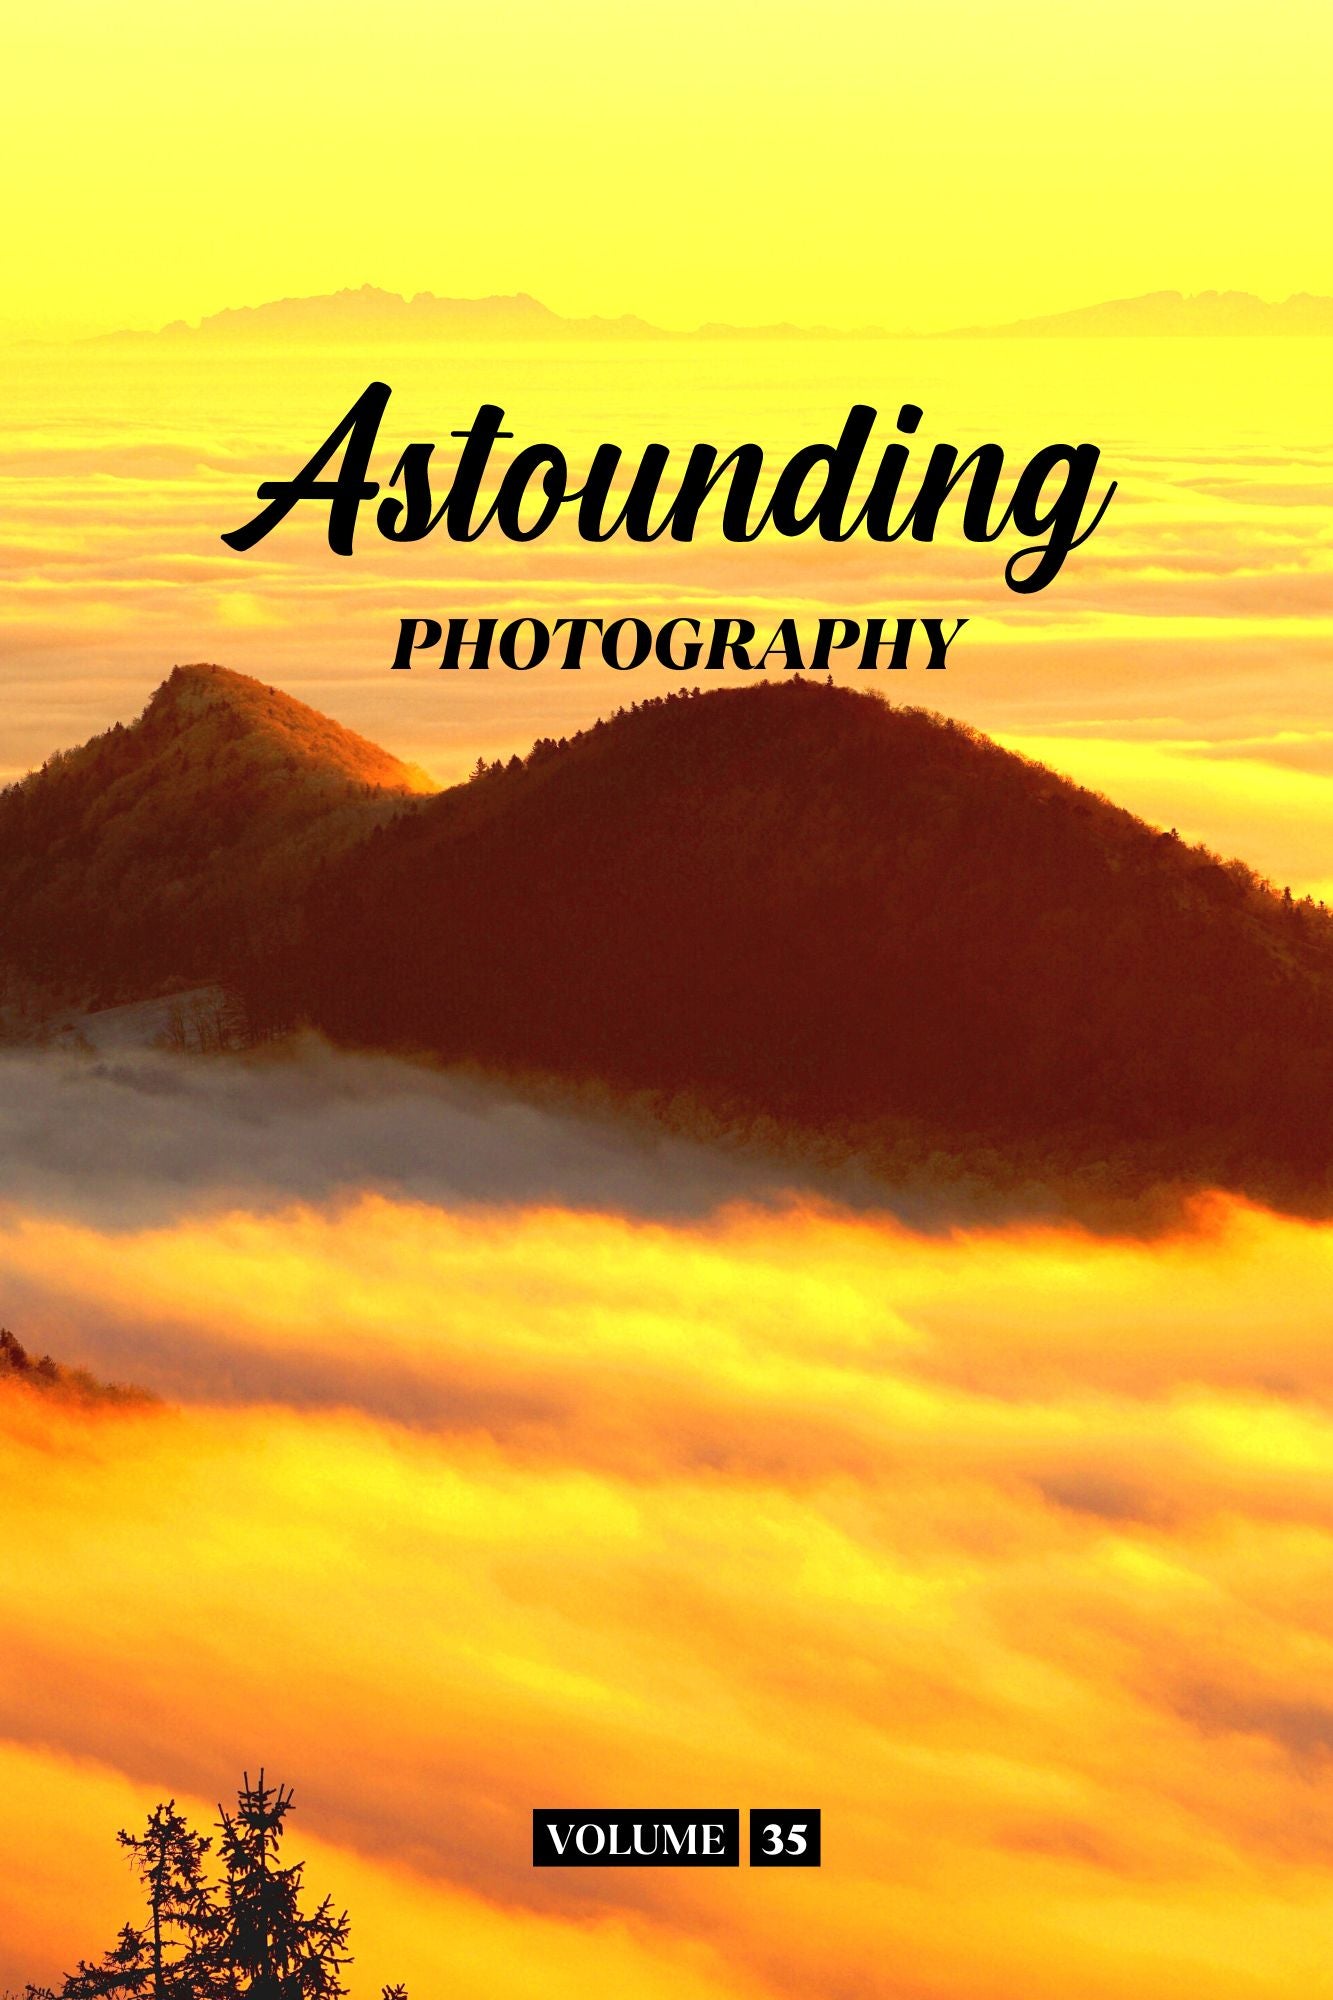 Astounding Photography Volume 35 (Physical Book Pre-Order)